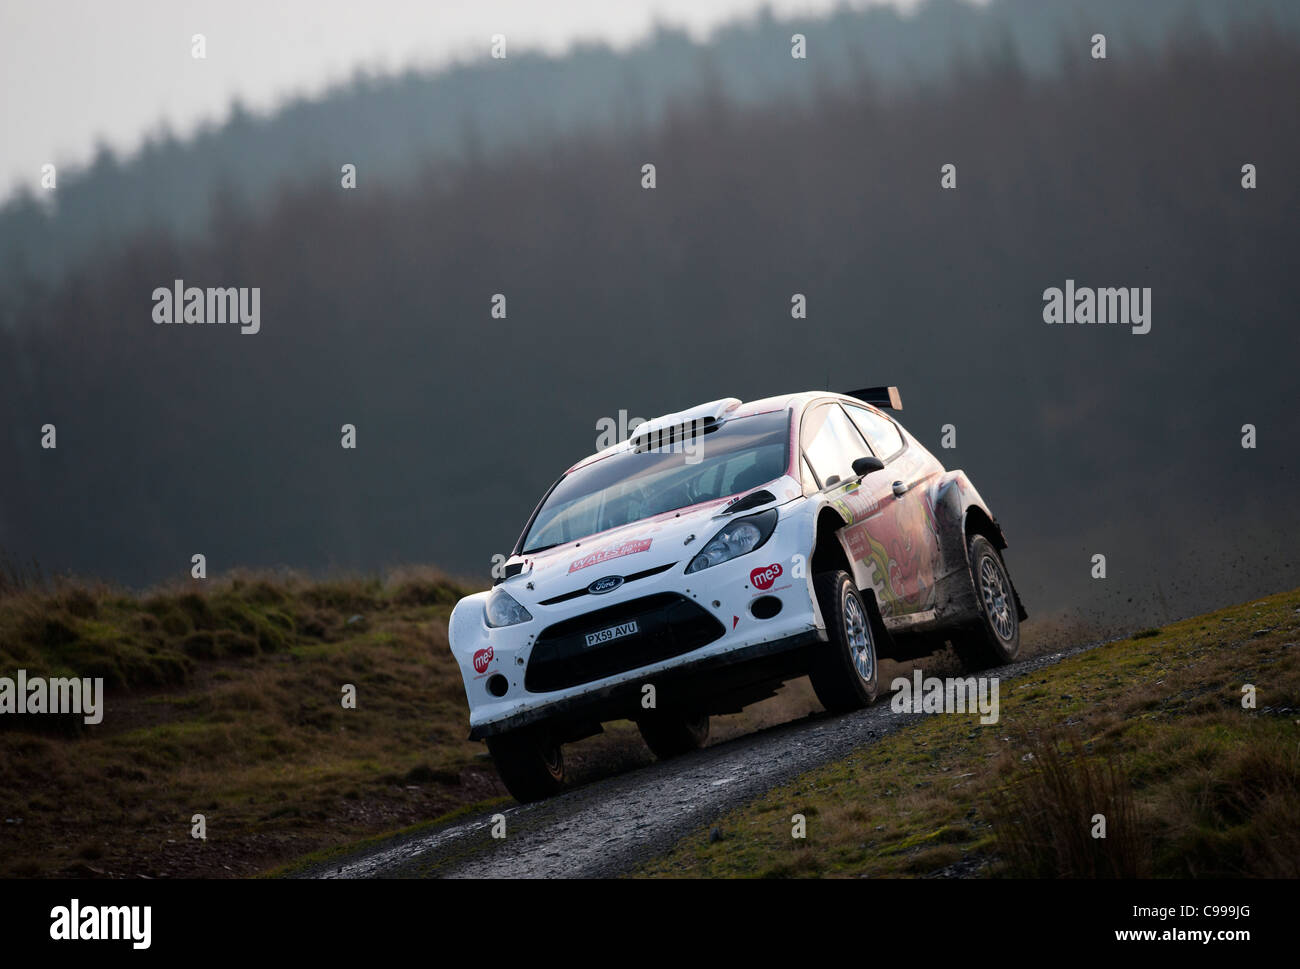 Une voiture de rallye est vu pendant une étape du Rallye du Pays de Galles GBR Novembre 2011 Banque D'Images